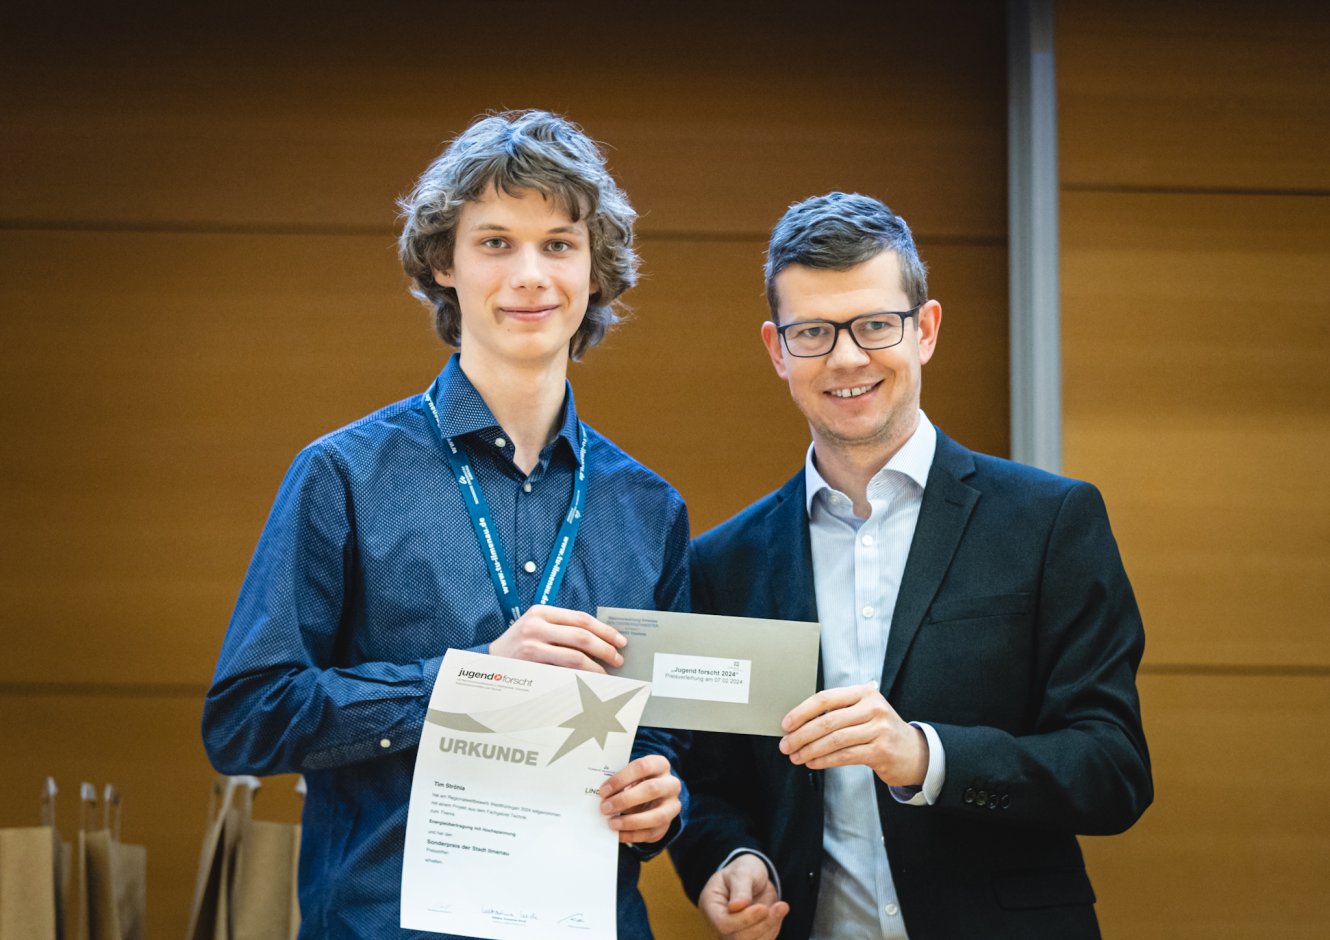 Ilmenaus Oberbürgermeister Daniel Schultheiß gratuliert Tim Ströhla als Gewinner des Sonderpreises der Stadt Ilmenau beim Wettbewerb „Jugend forscht